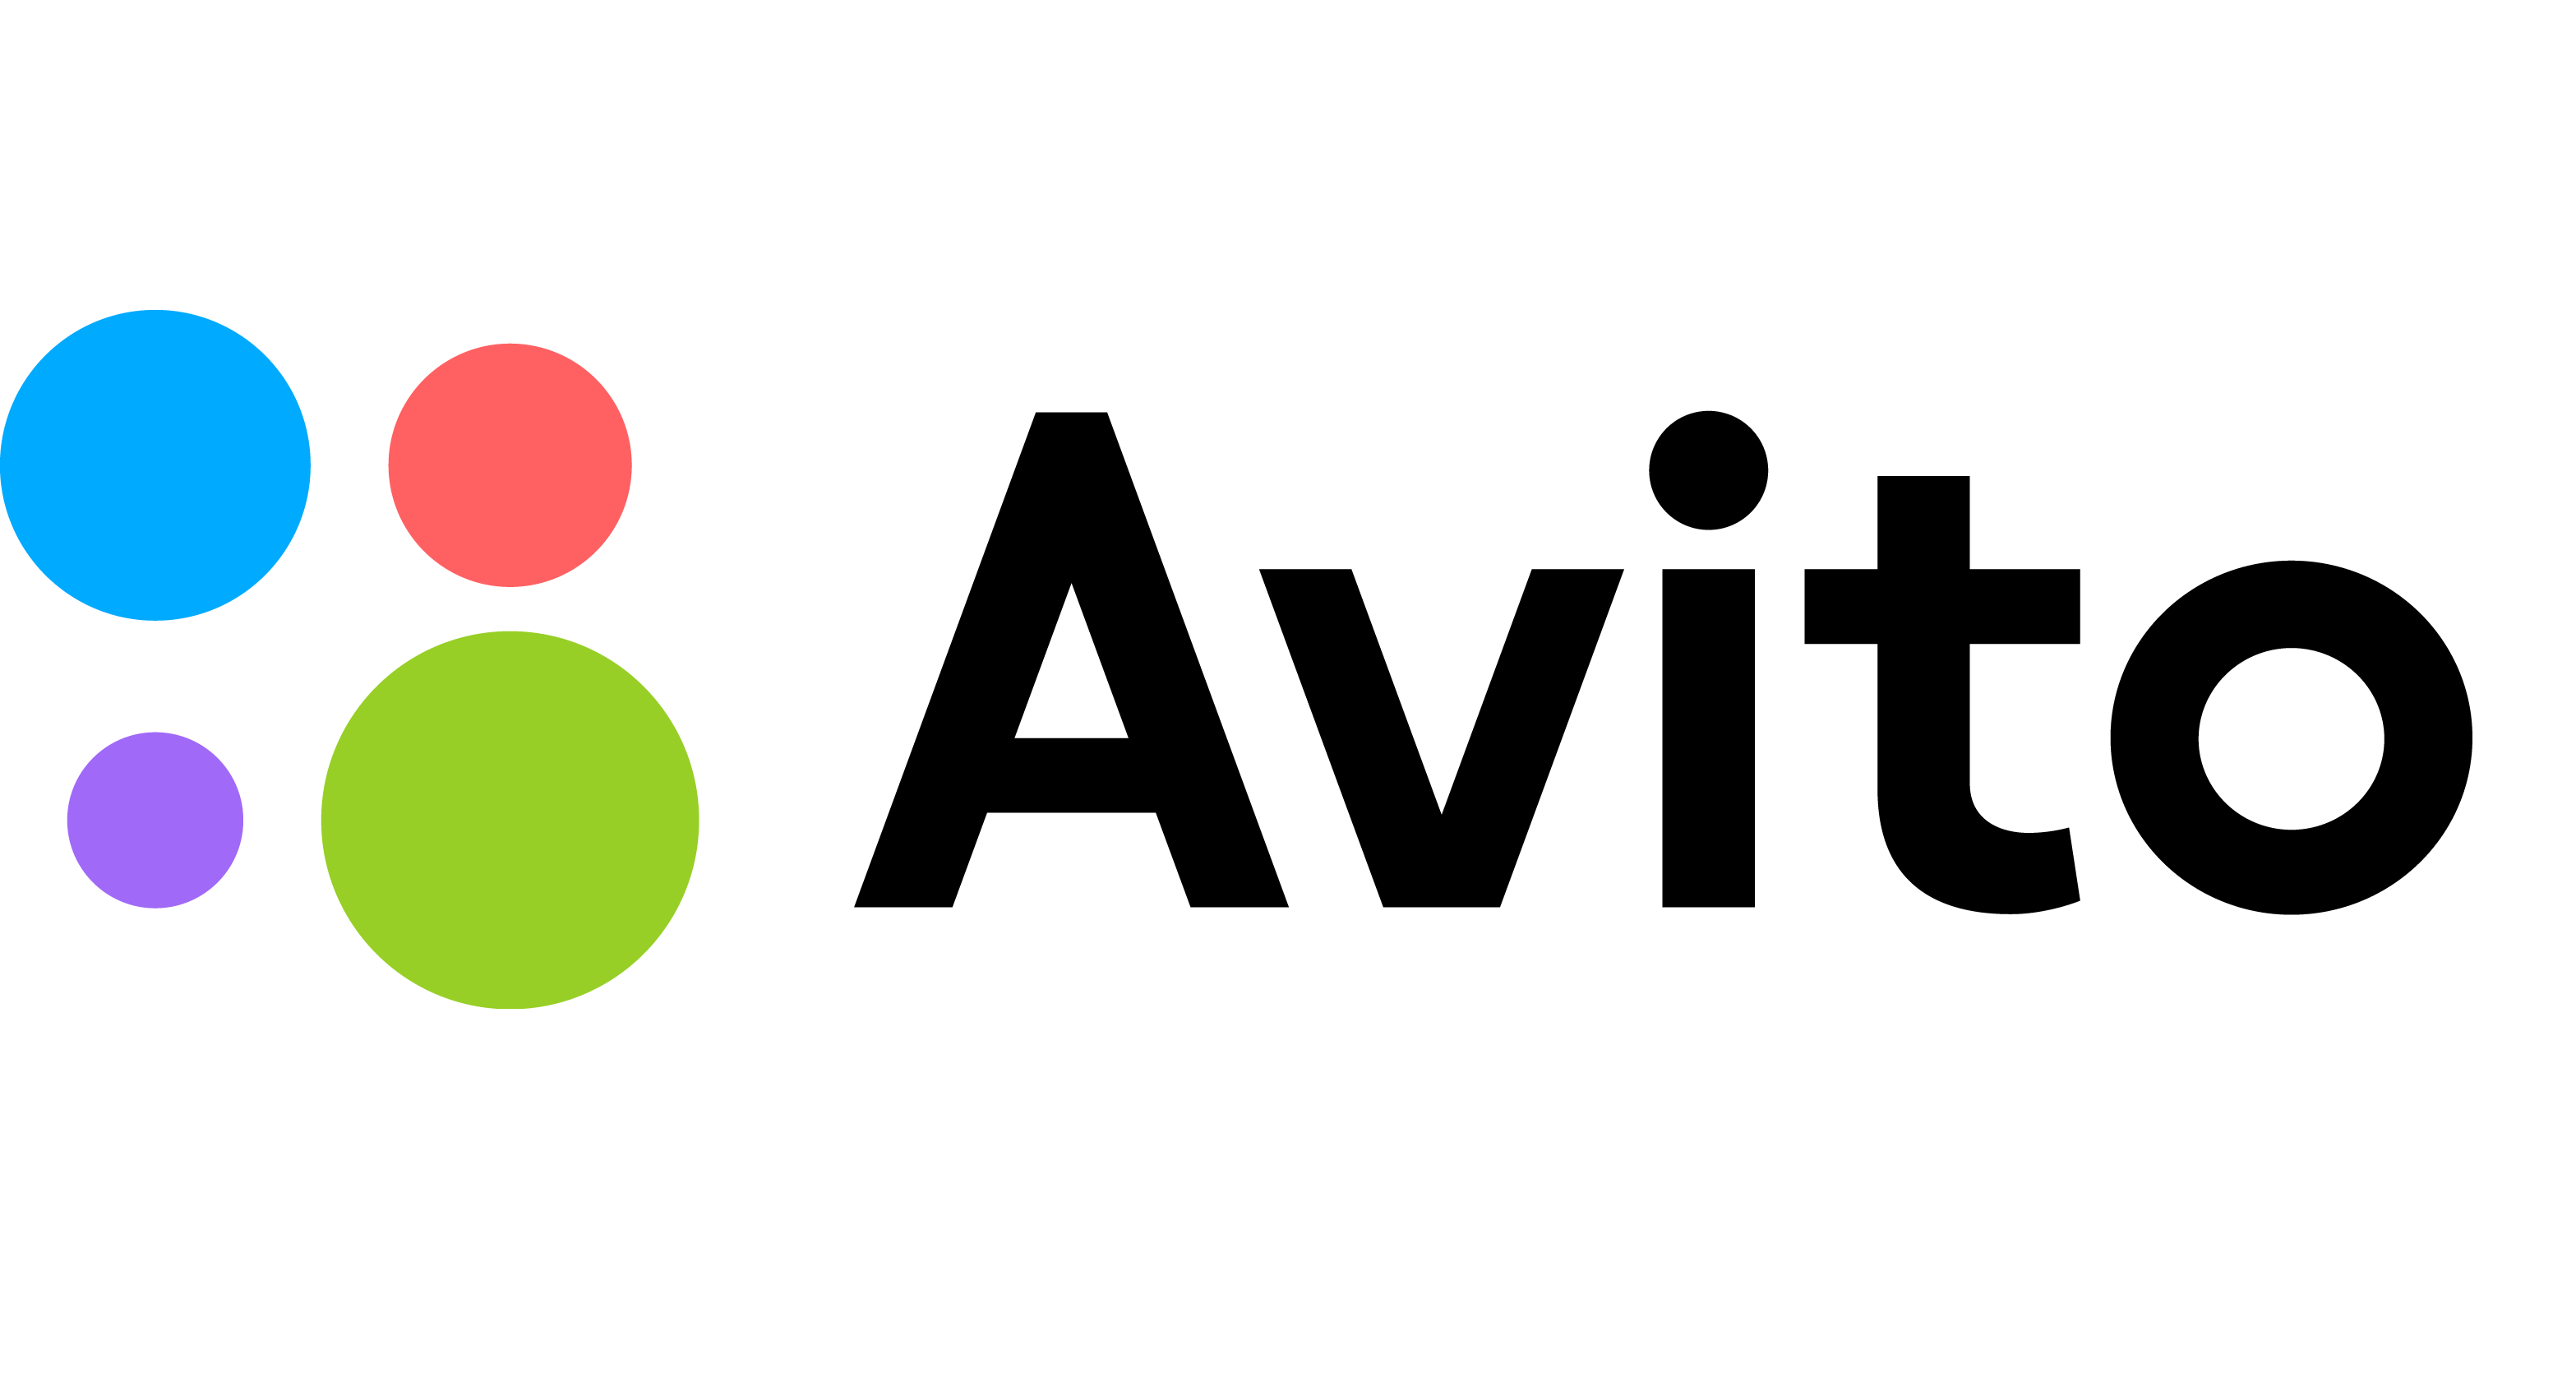 Каталог запчастей на торговой площадке Avito